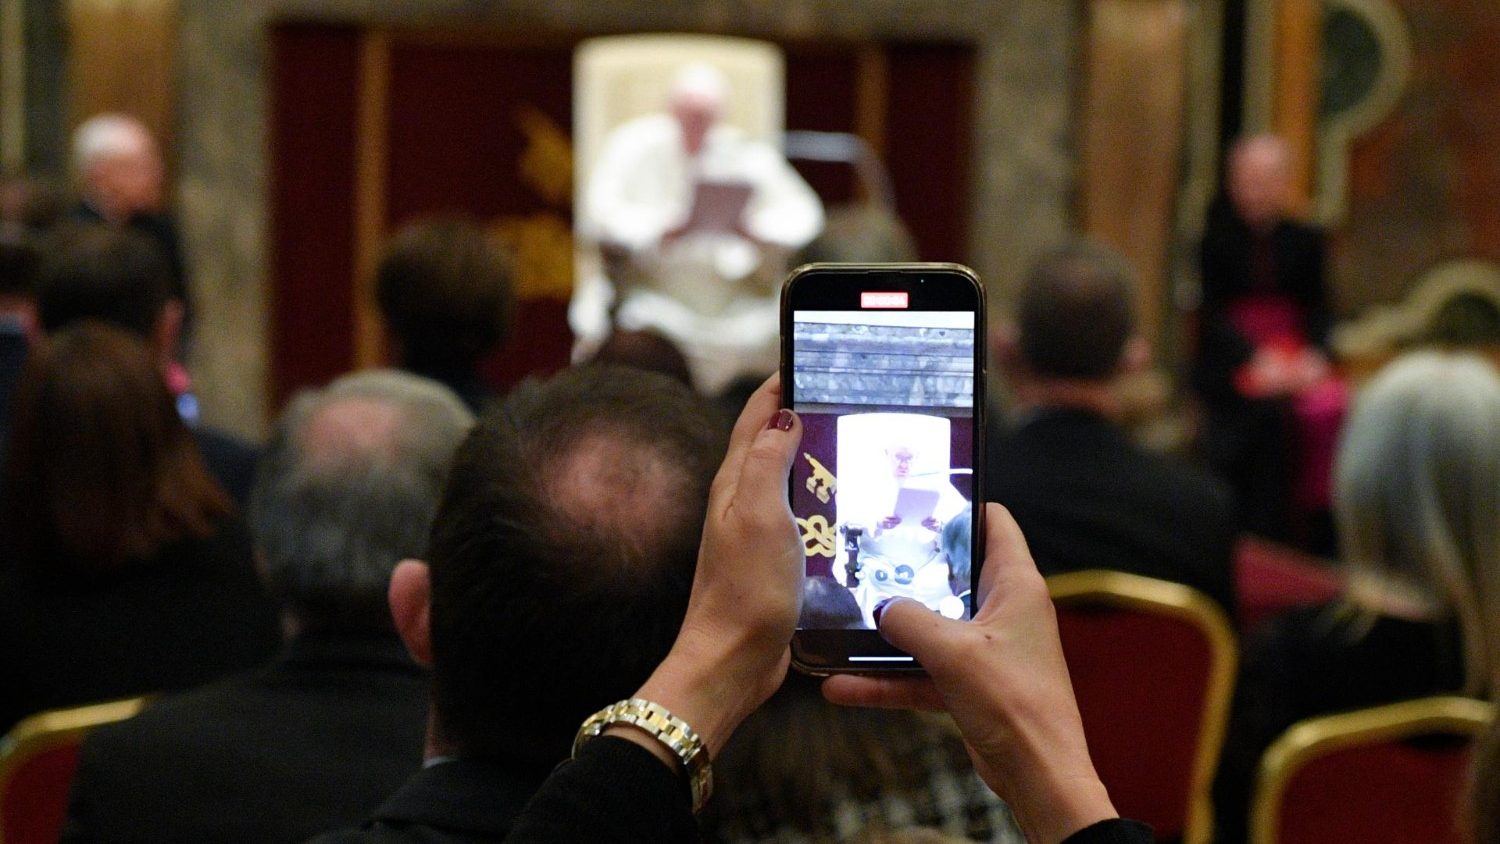 Papa aos comunicadores: contrastar as fake news, mas não isolar os que têm  dúvidas